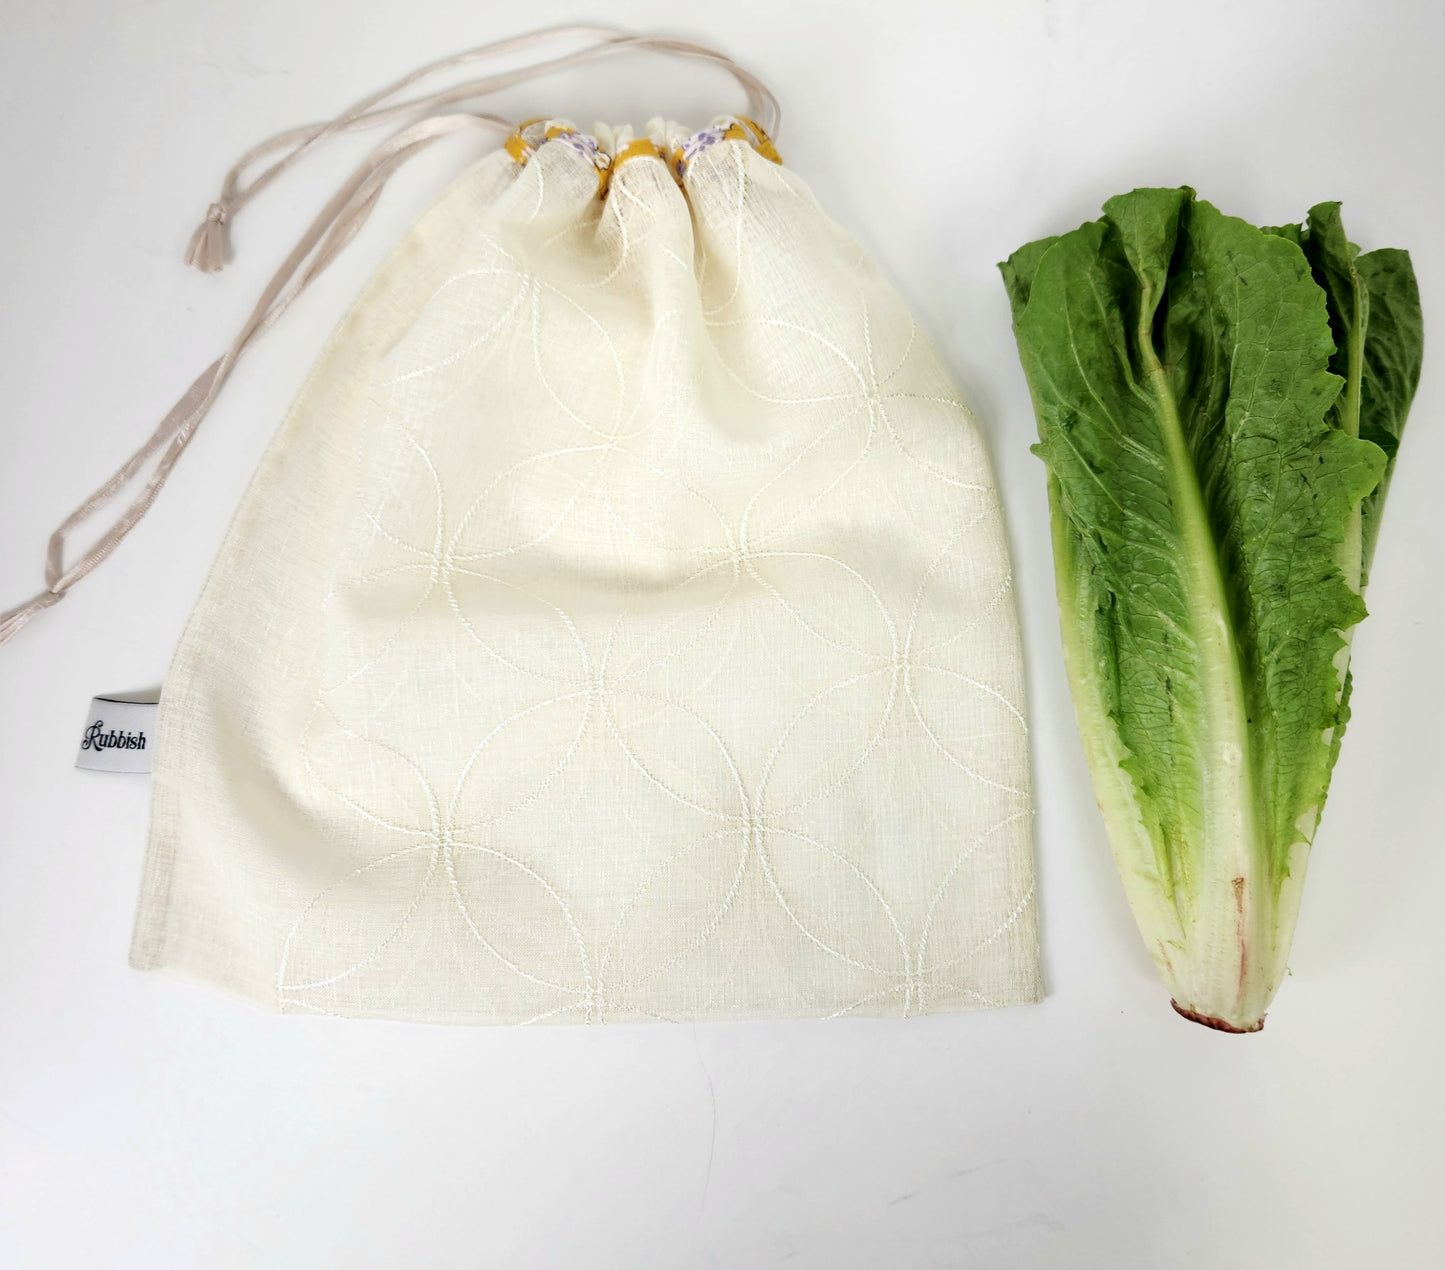 Produce Bag